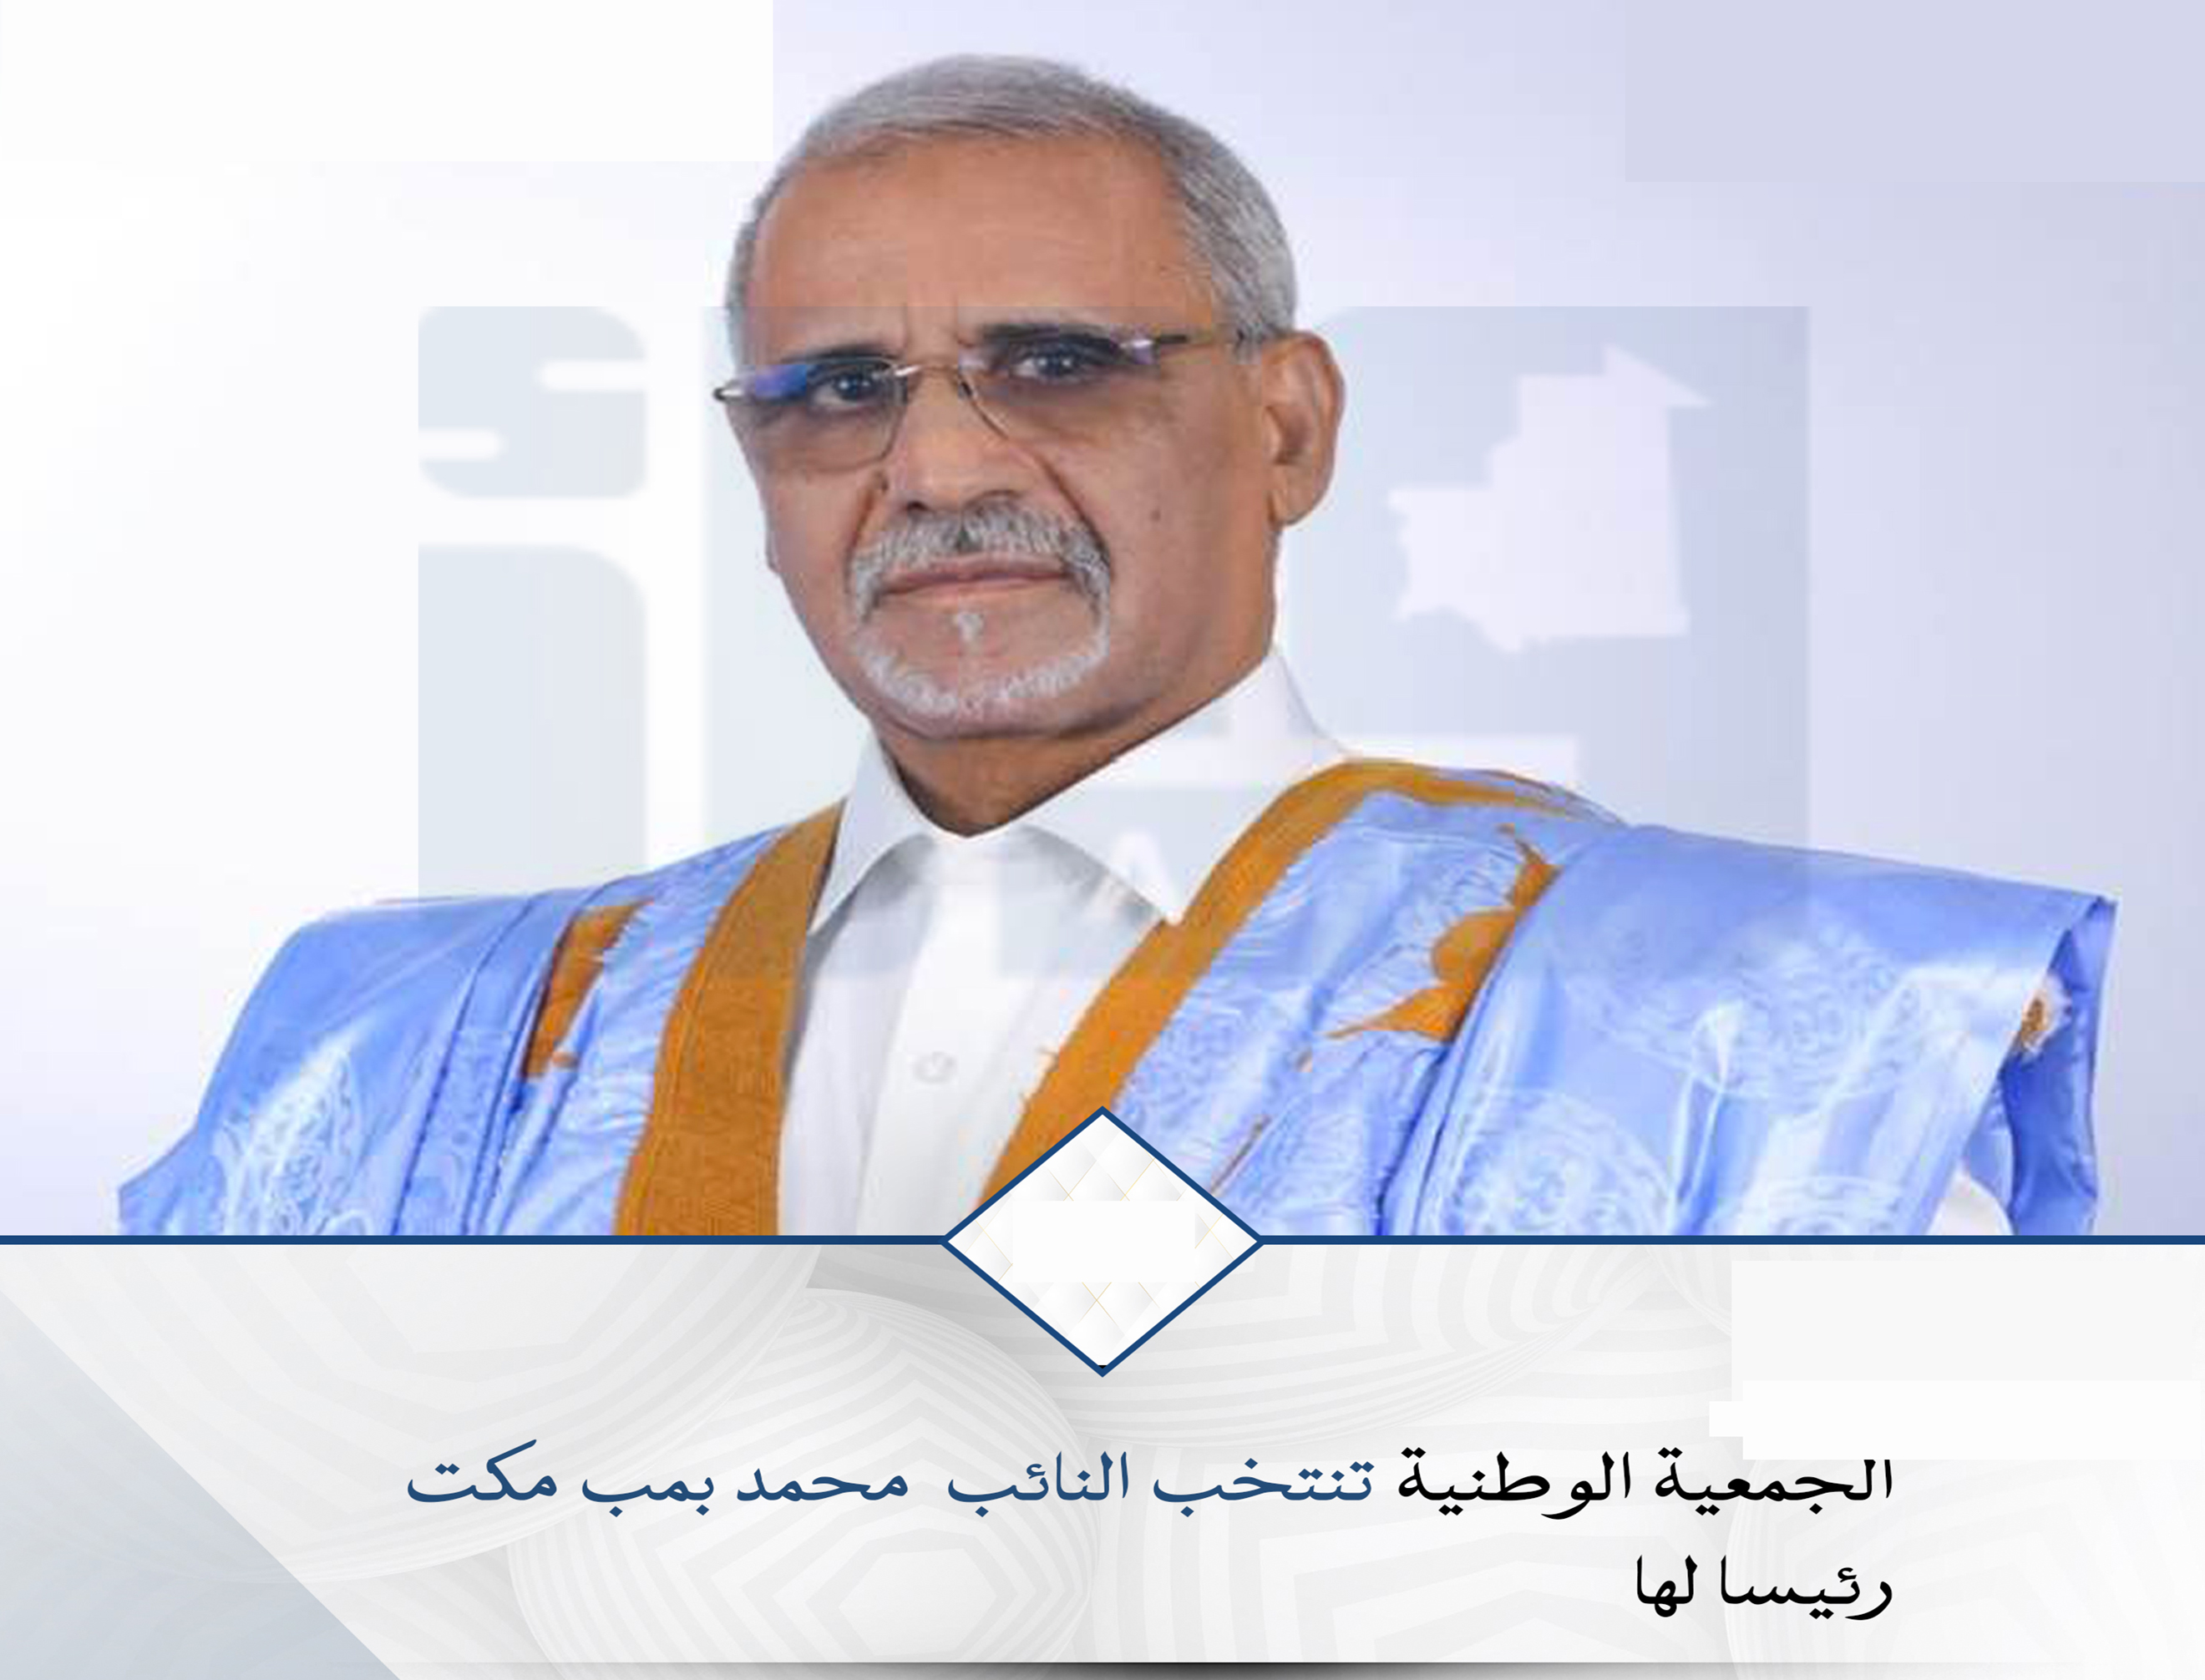 الأمين العام يهنئ رئيس البرلمان الموريتاني 